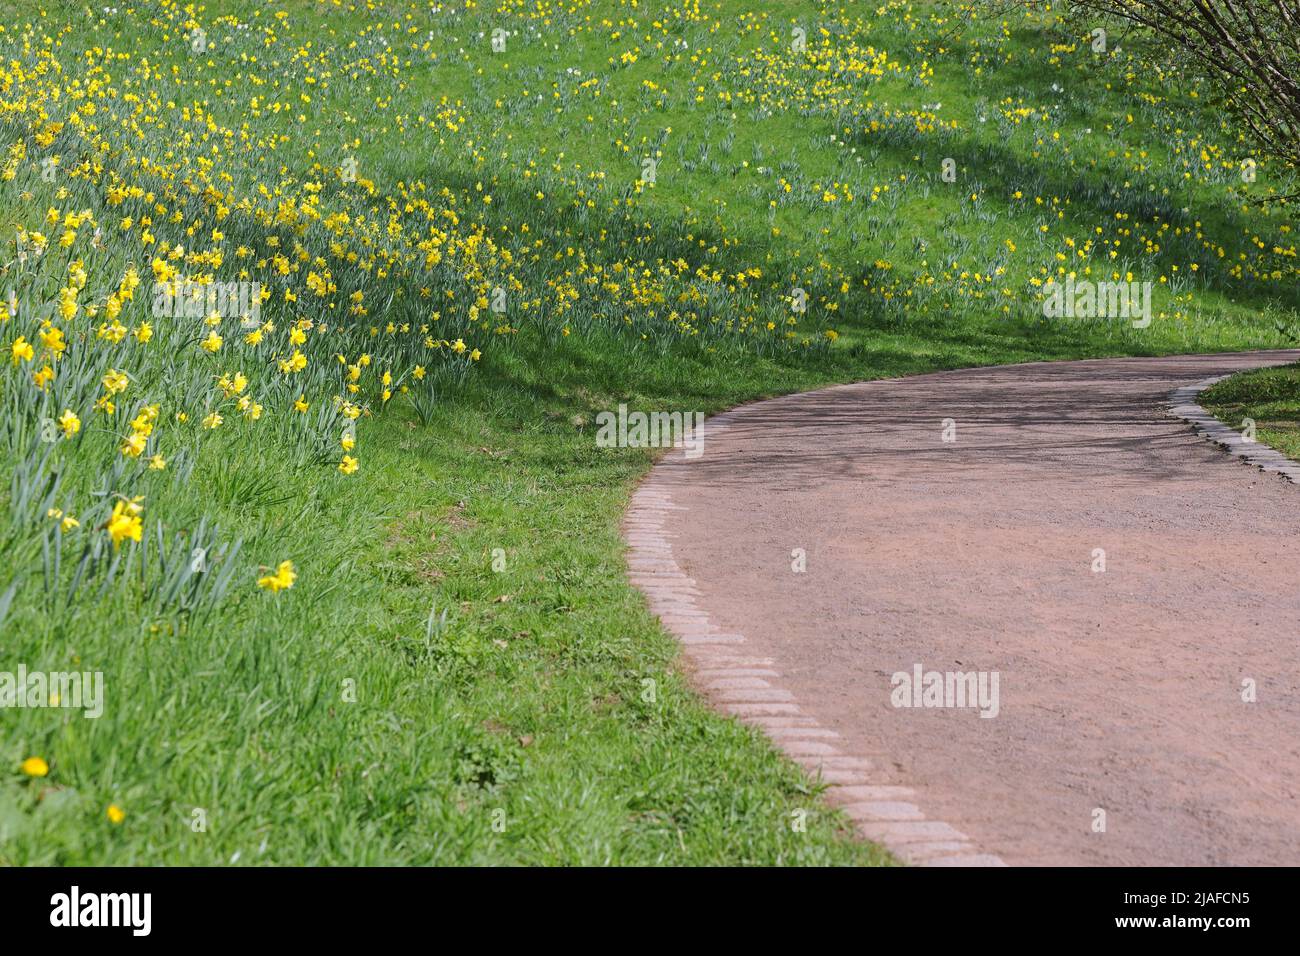 daffodil (spéc. Narcisse), pente de pelouse dans un parc avec des jonquilles, Allemagne Banque D'Images